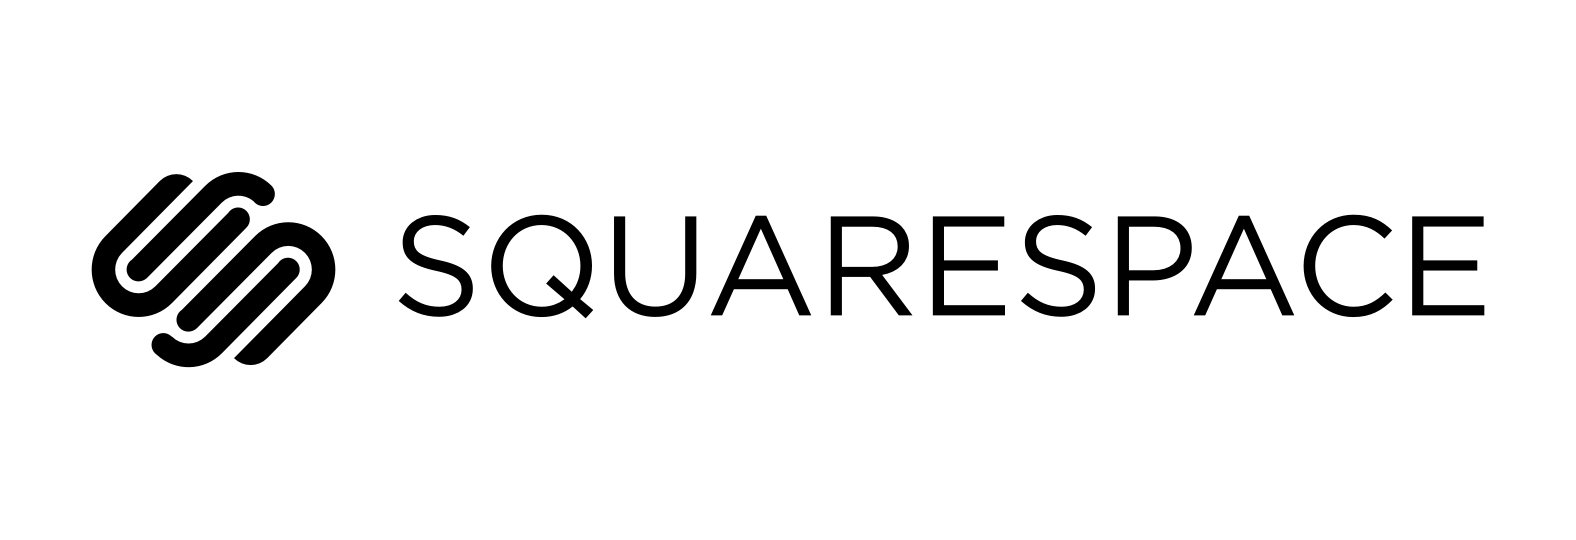 Squarespace Logo Design